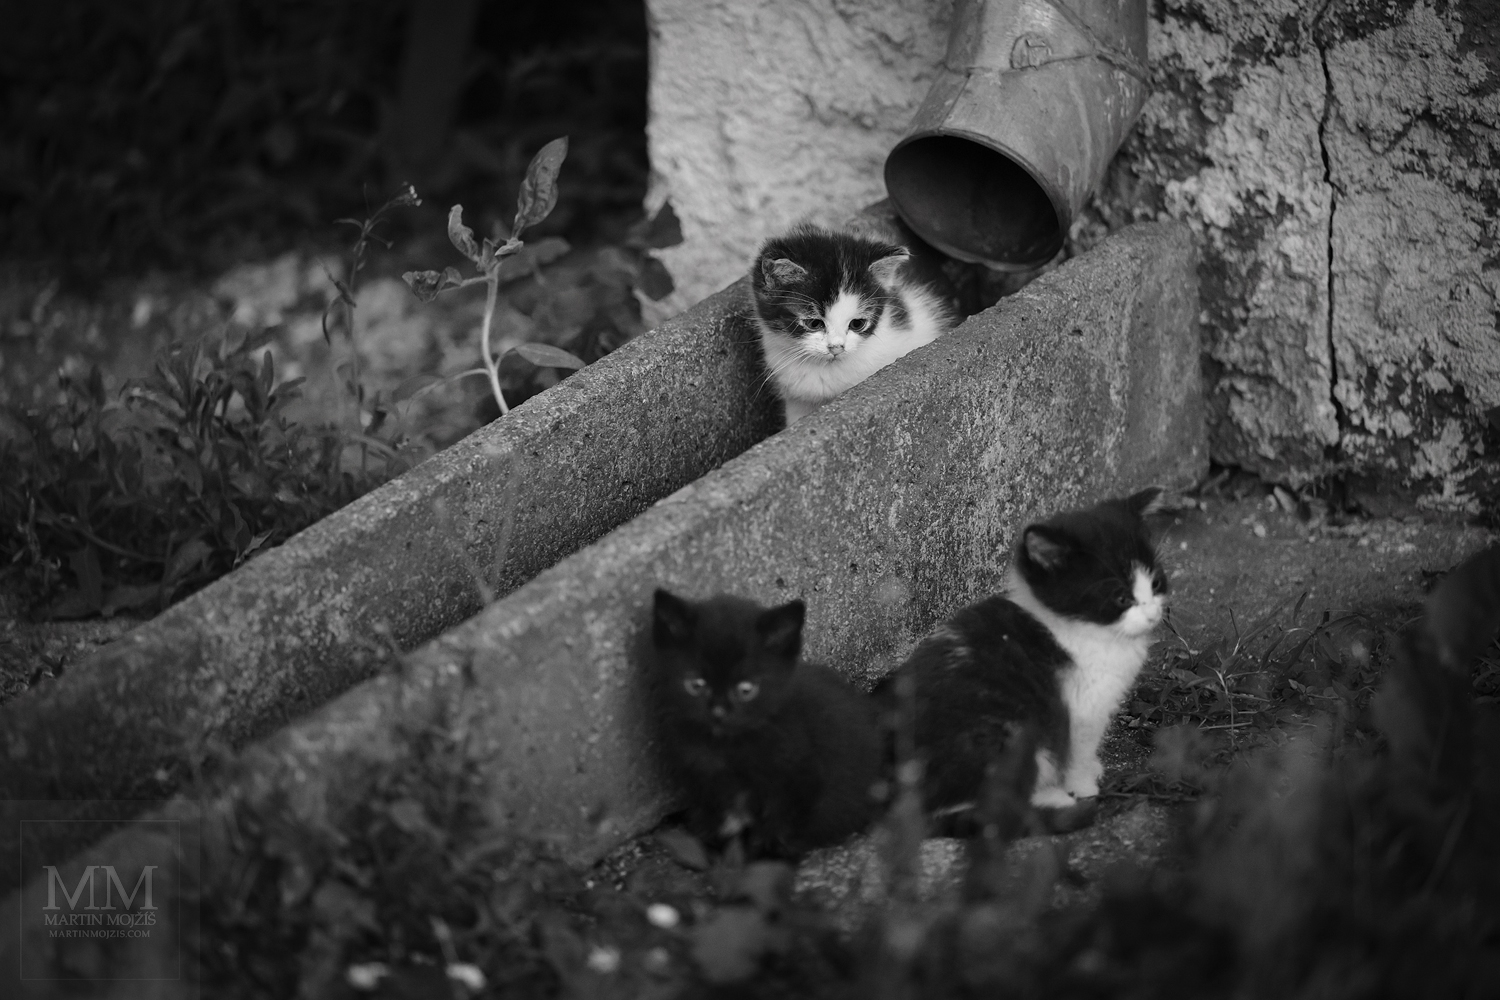 Tři koťátka u okapu. Umělecká černobílá fotografie s názvem POD OKAPEM. Fotograf Martin Mojžíš.